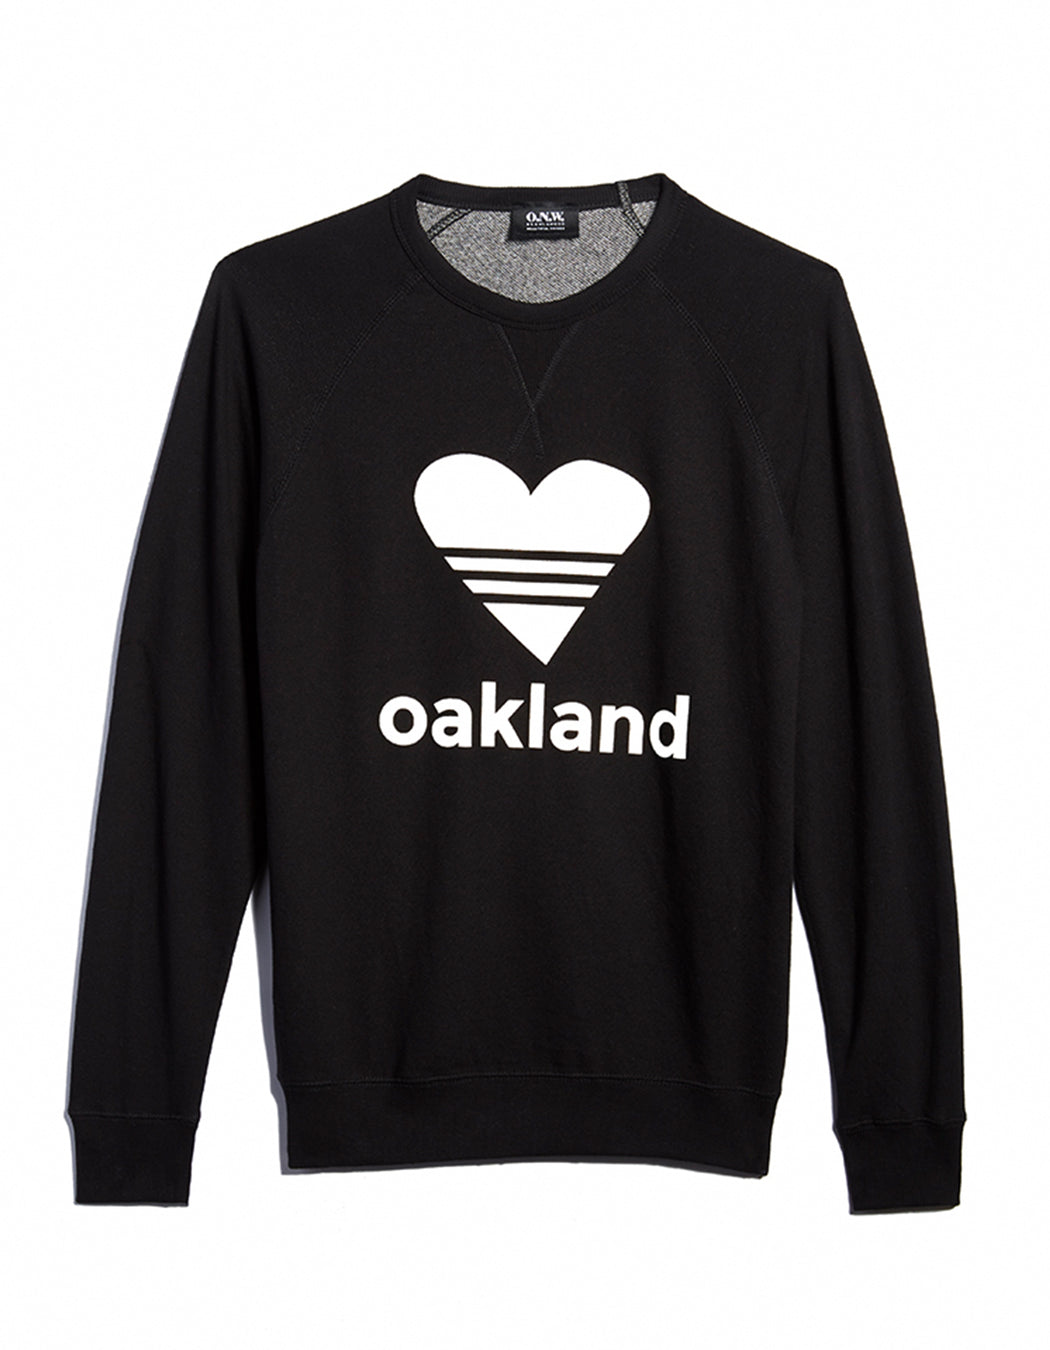 UNISEX SPORTY HEART Oakland / BLACK Sweatshirt ONW-SPHT-202-BLK